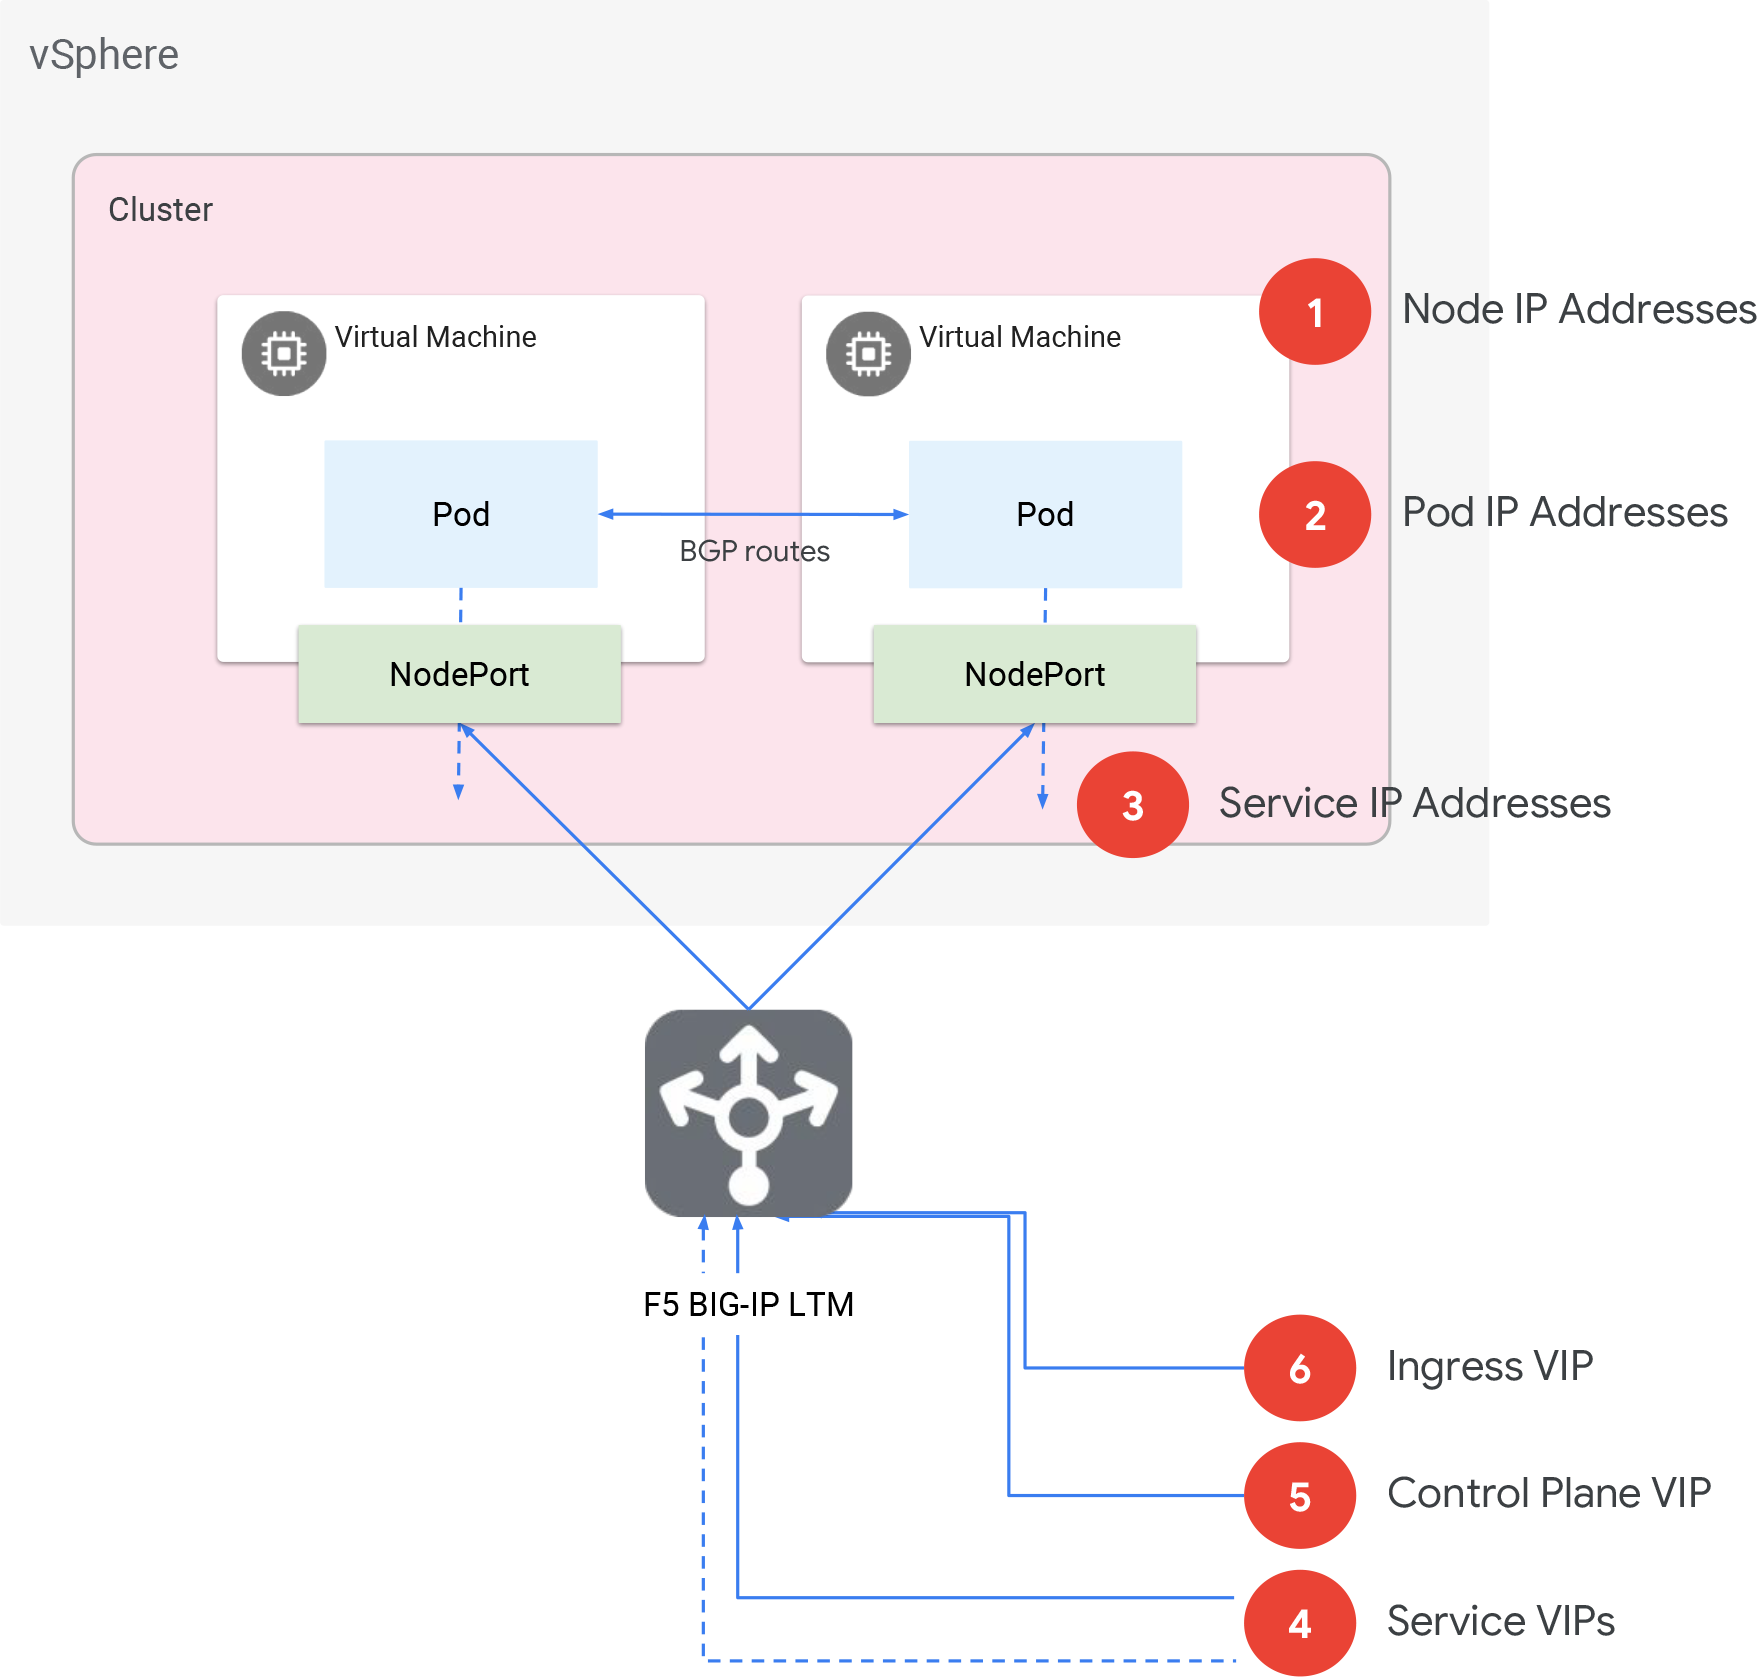 Diagrama descrevendo os clusters do Anthos na arquitetura do VMware